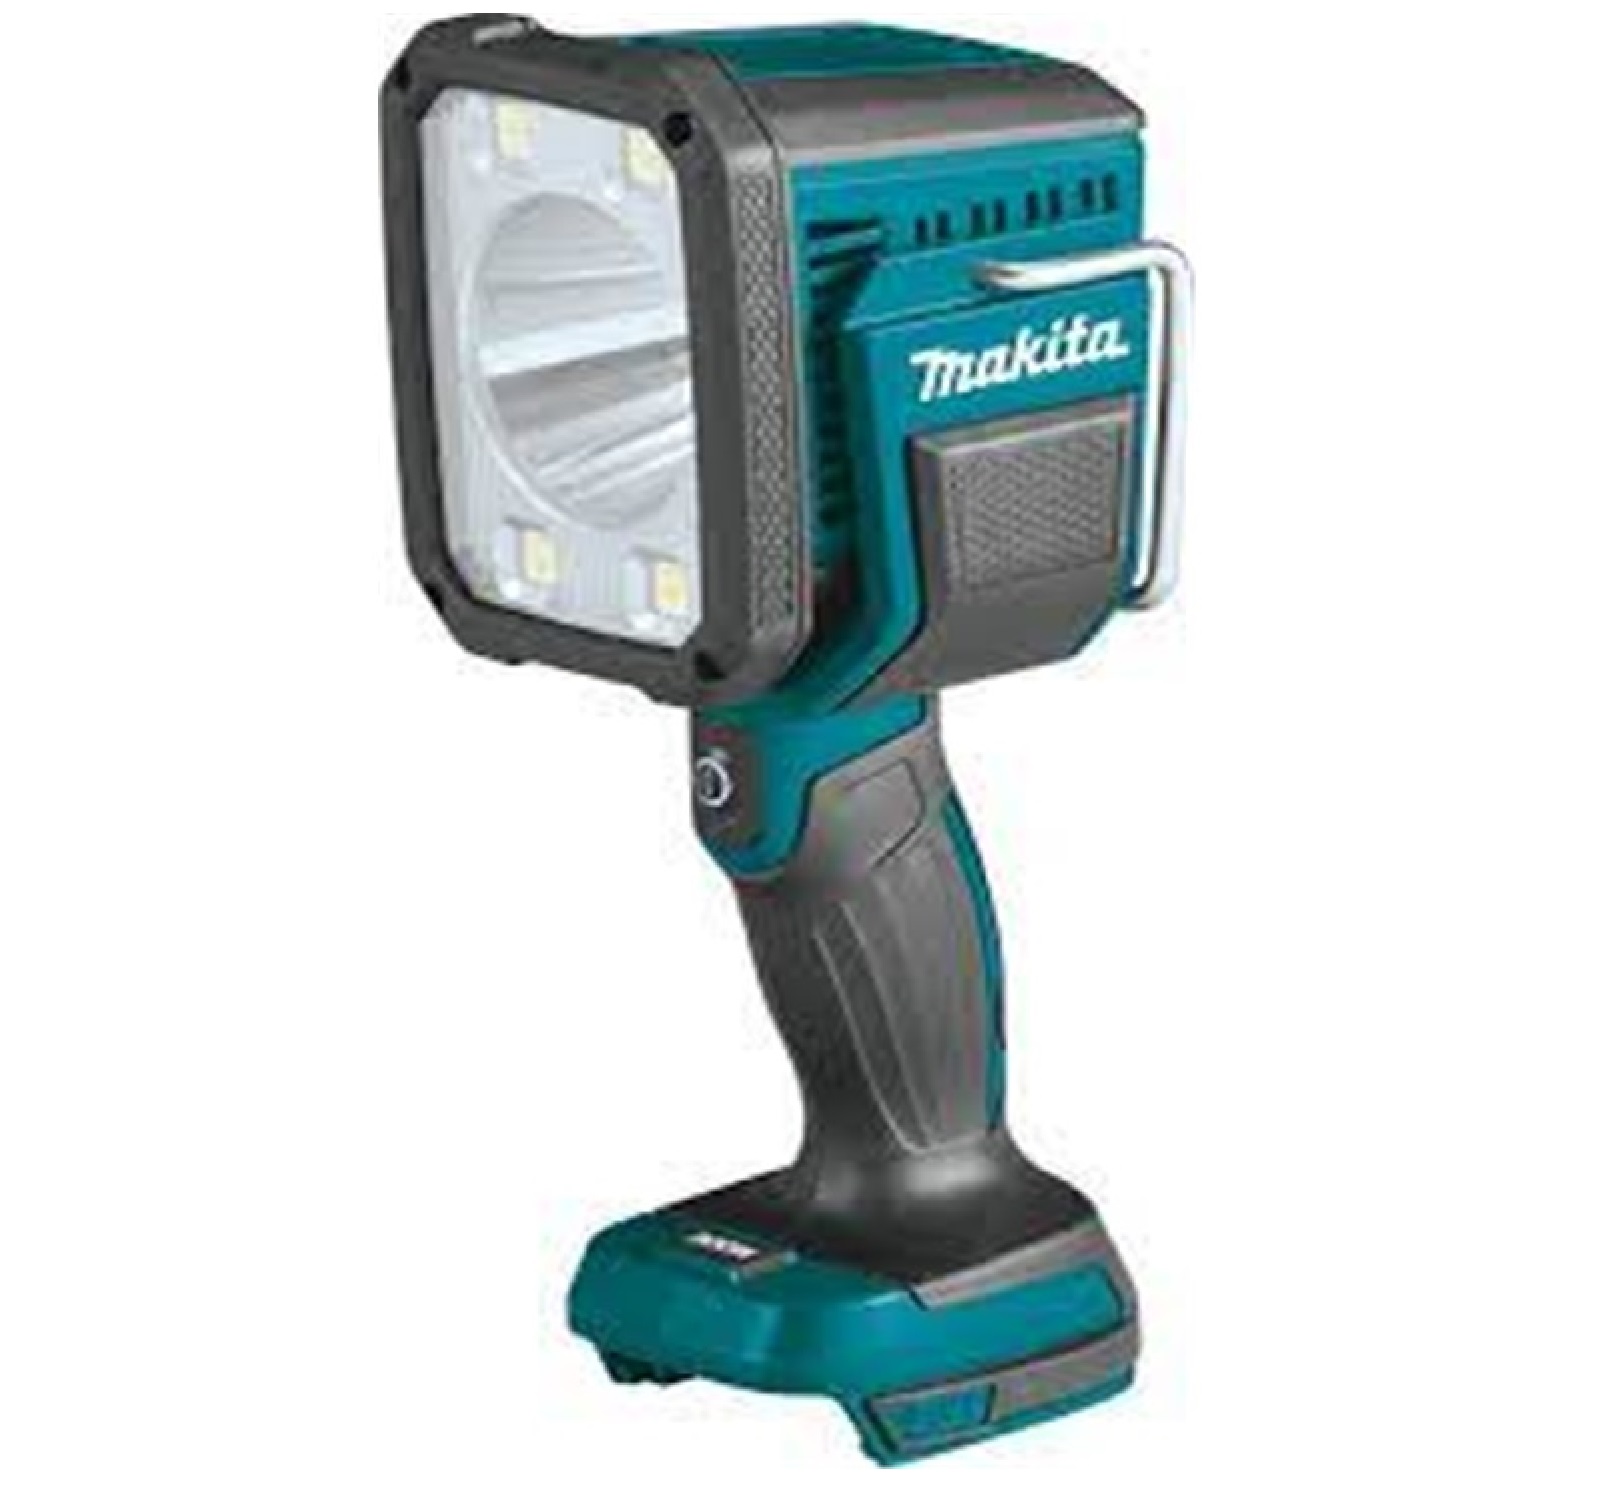 Makita DML812 DC LED Flashlight 18V/14.4V 1250LM - Bare Unit